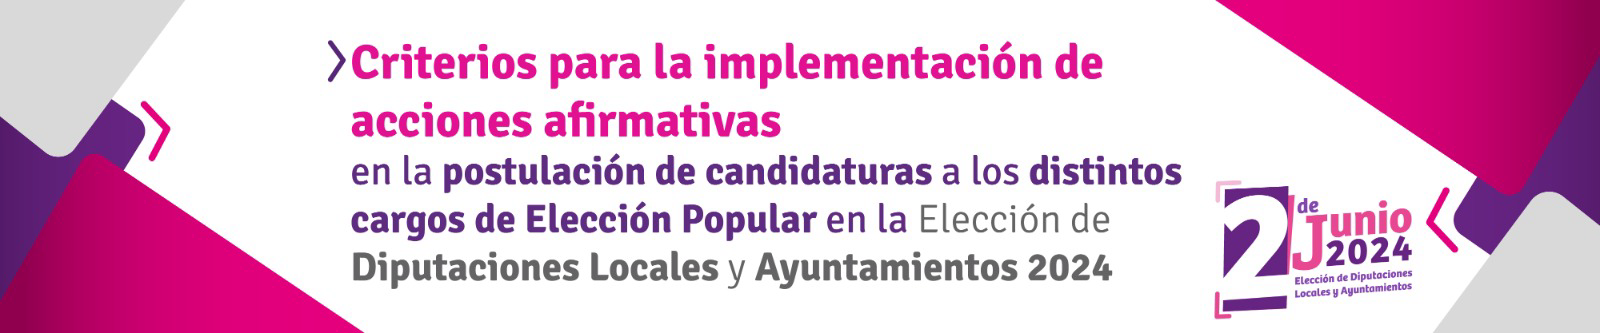 Criterios para la implementación de acciones afirmativas en la postulación de candidaturas a los distintos cargos de Elección Popular en la Elección de Diputaciones Locales y Ayuntamientos 2024